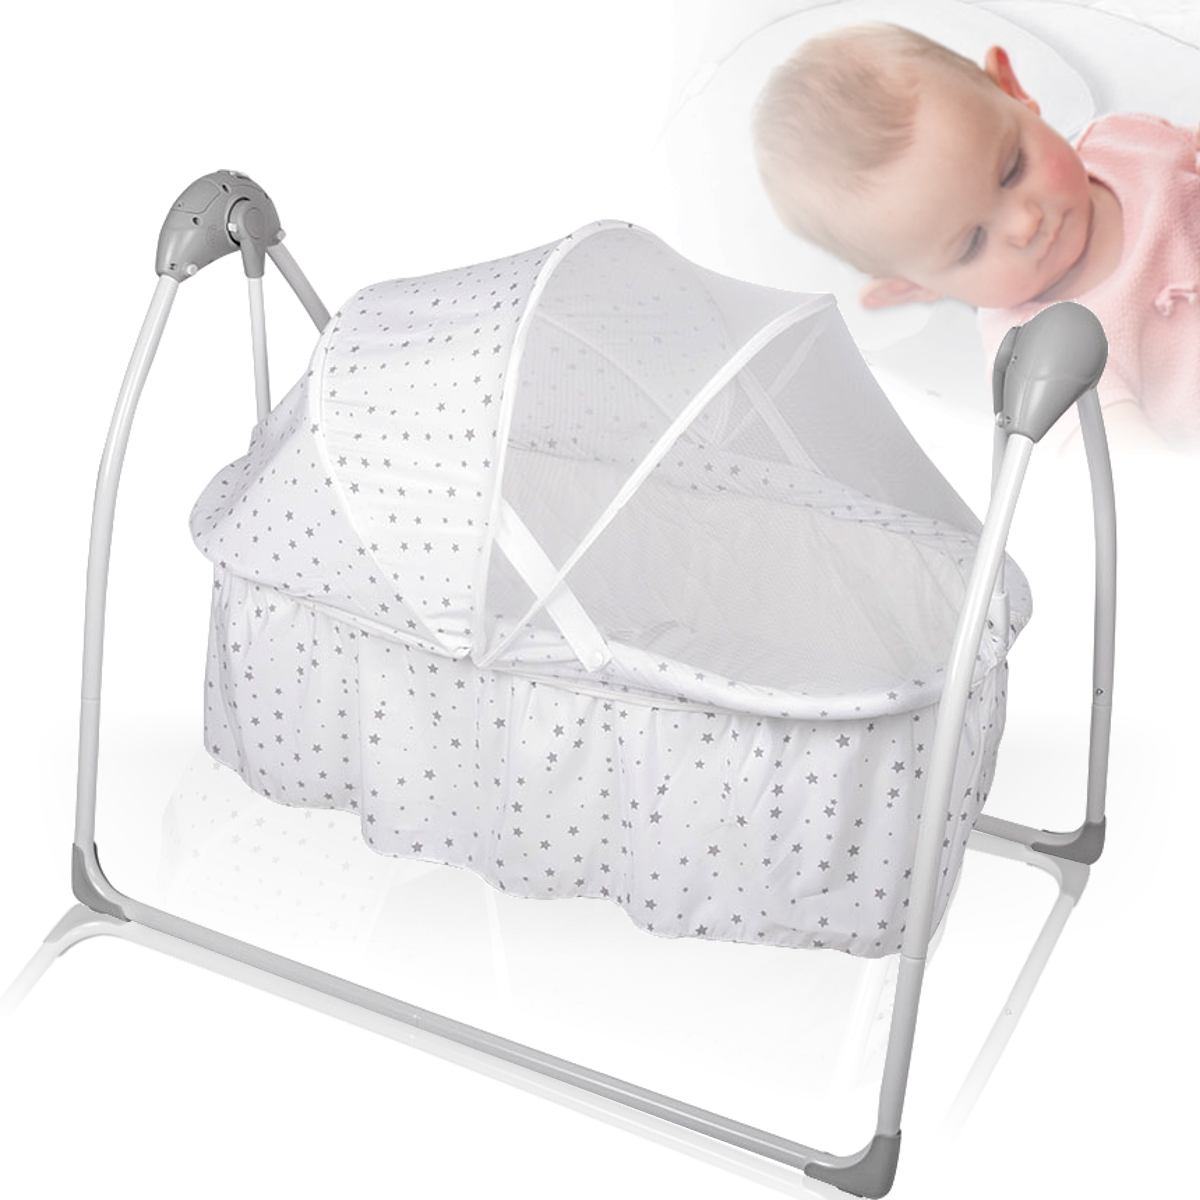 Elektrische Babyschaukel Vollautomatisch Baby Wippe Wiege Stuben Schaukel Bett 